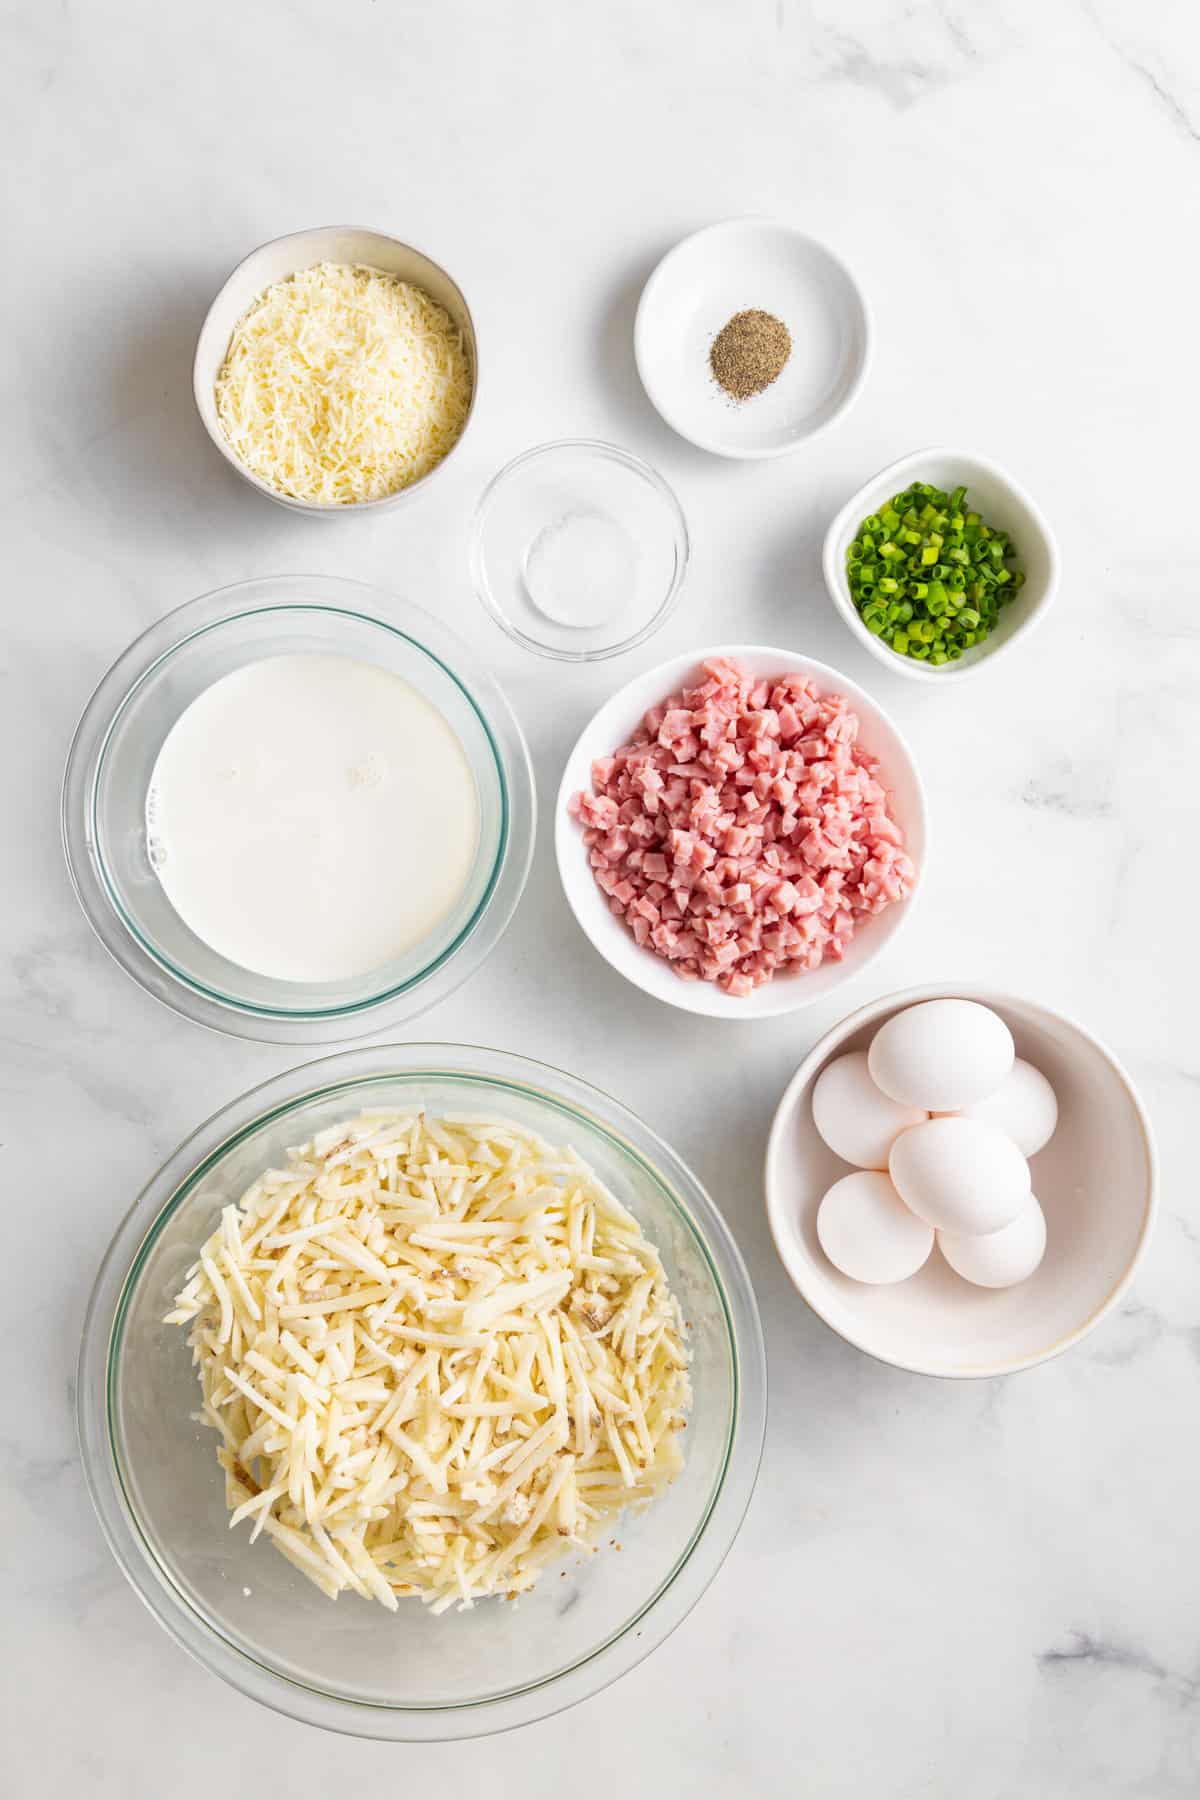 ingredients to make farmer's breakfast casserole